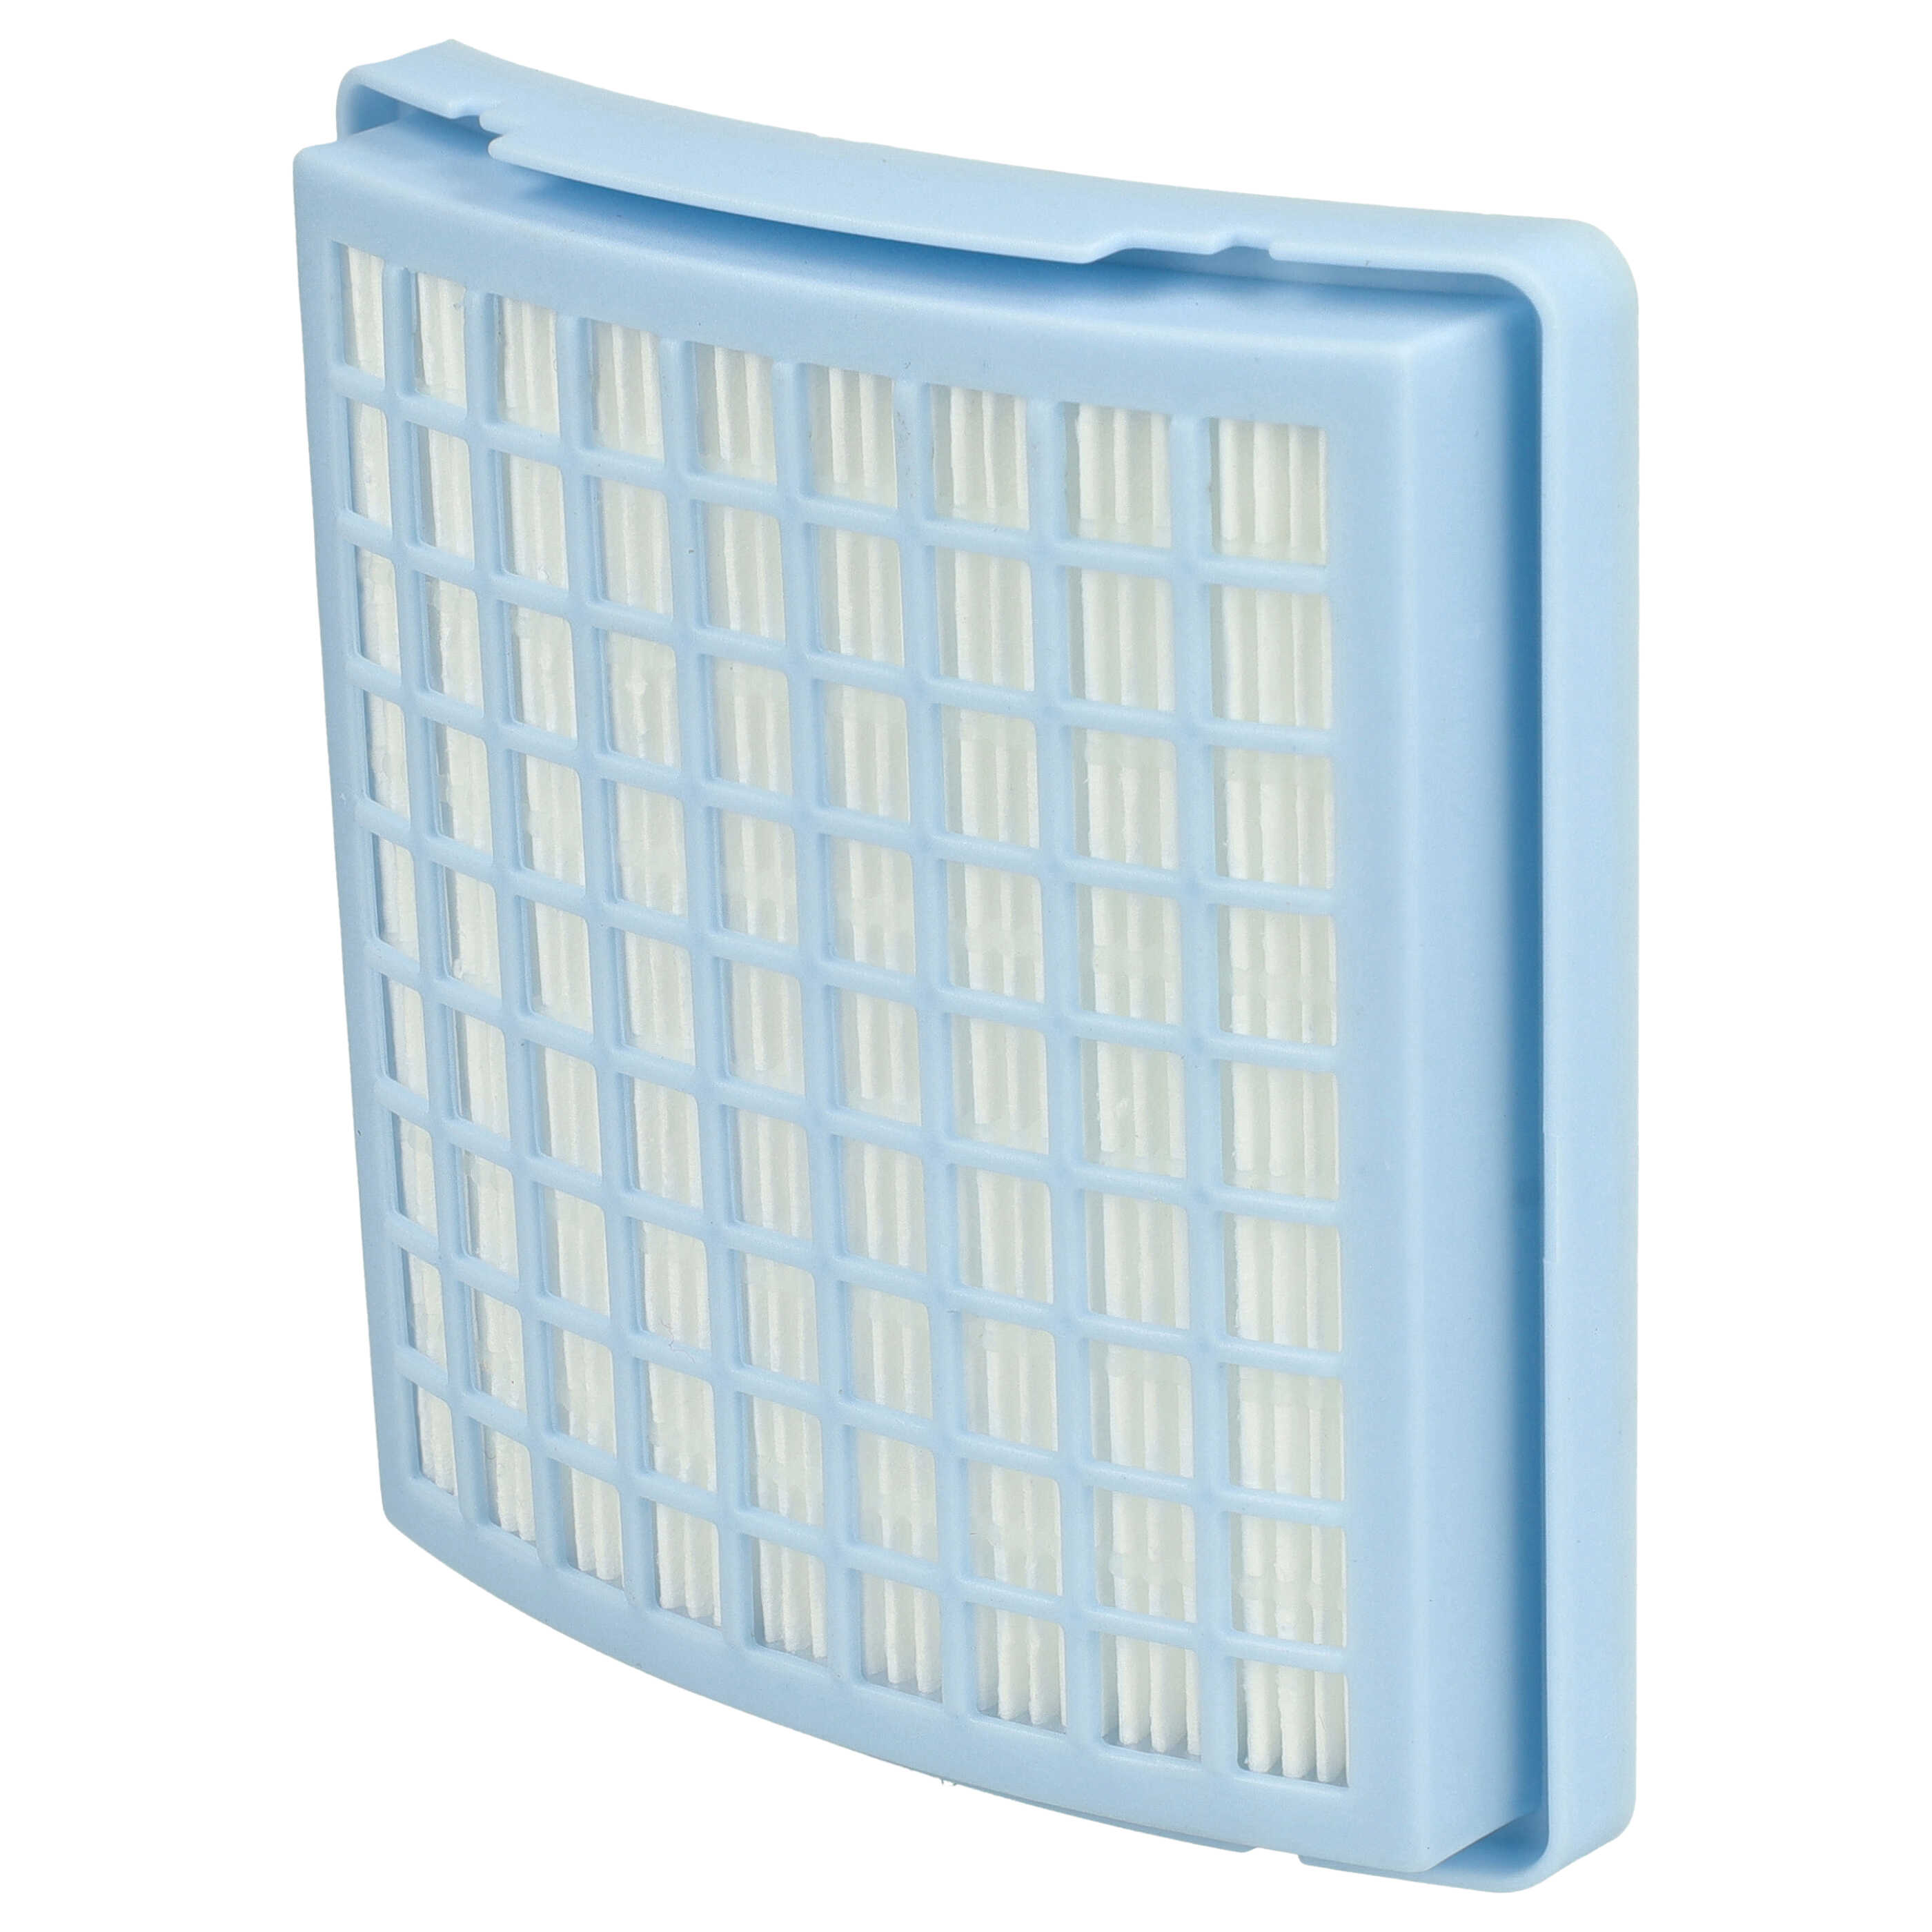 Filtro reemplaza Miele 7364560, SF-H10 para aspiradora - filtro de escape HEPA blanco / azul claro